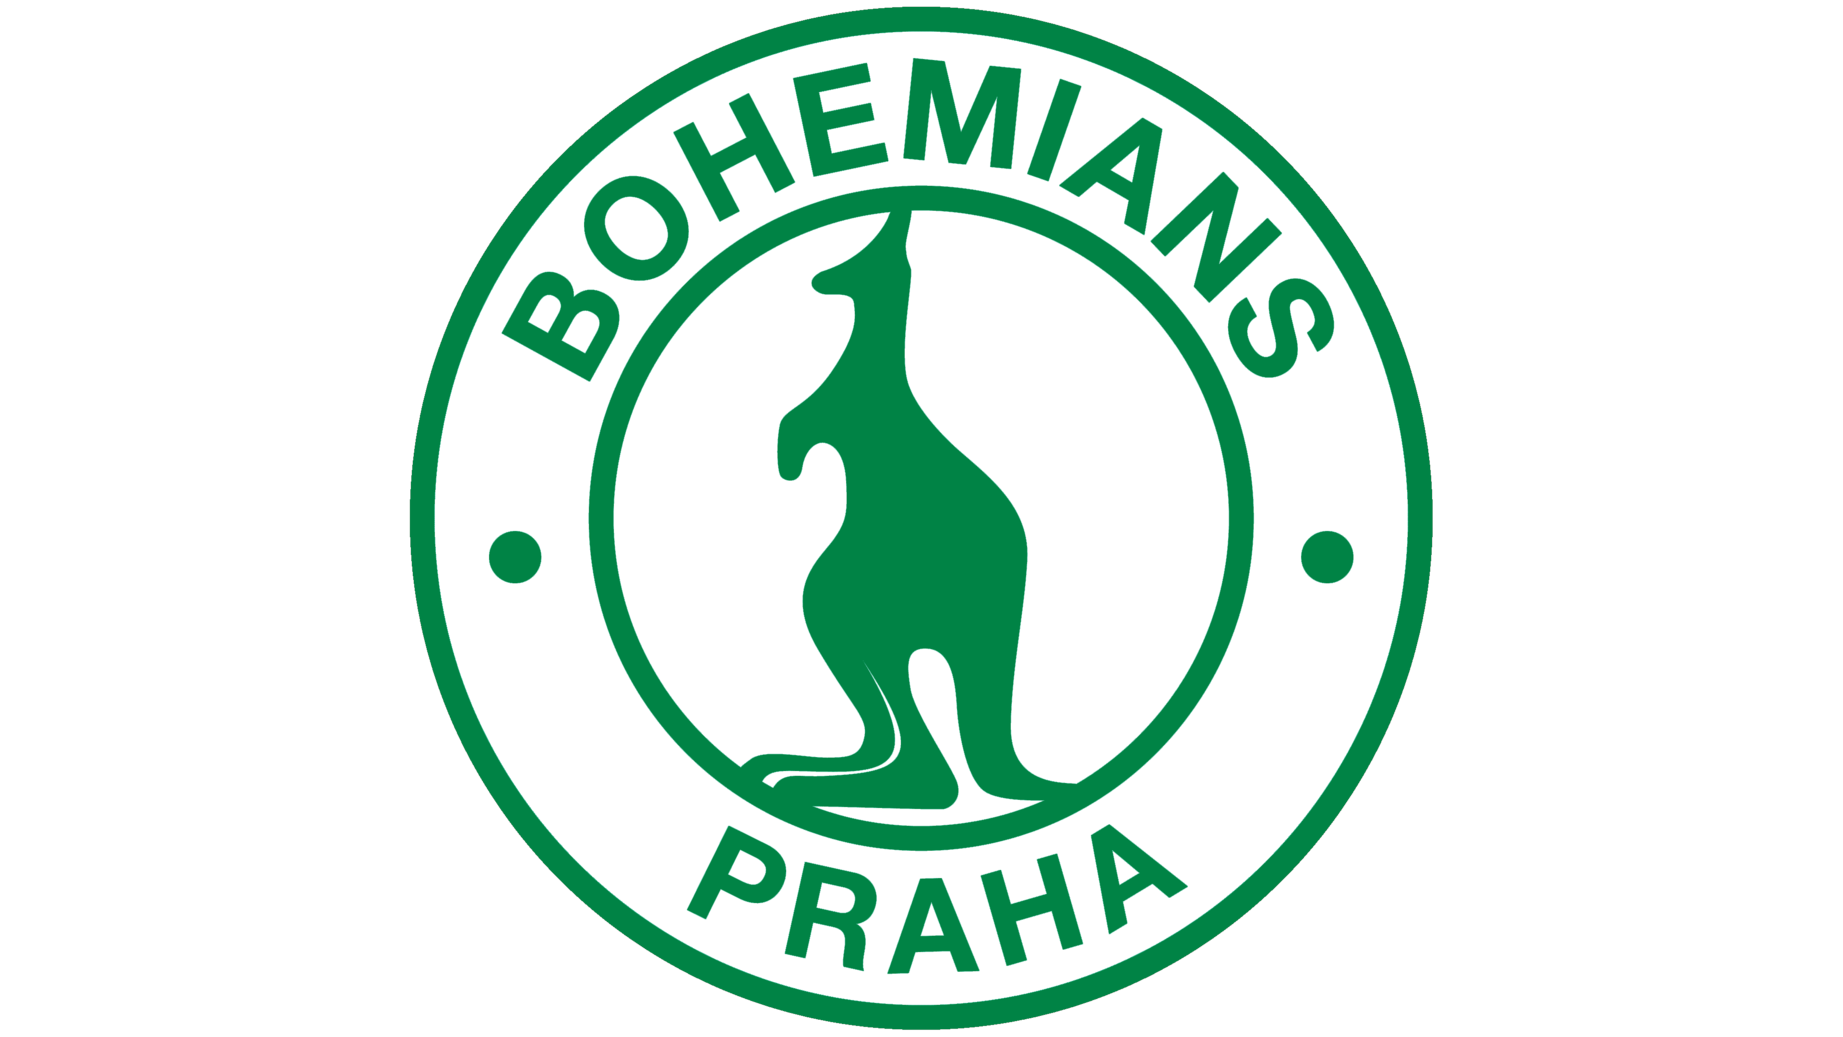 Bohemians praha 1905 logo